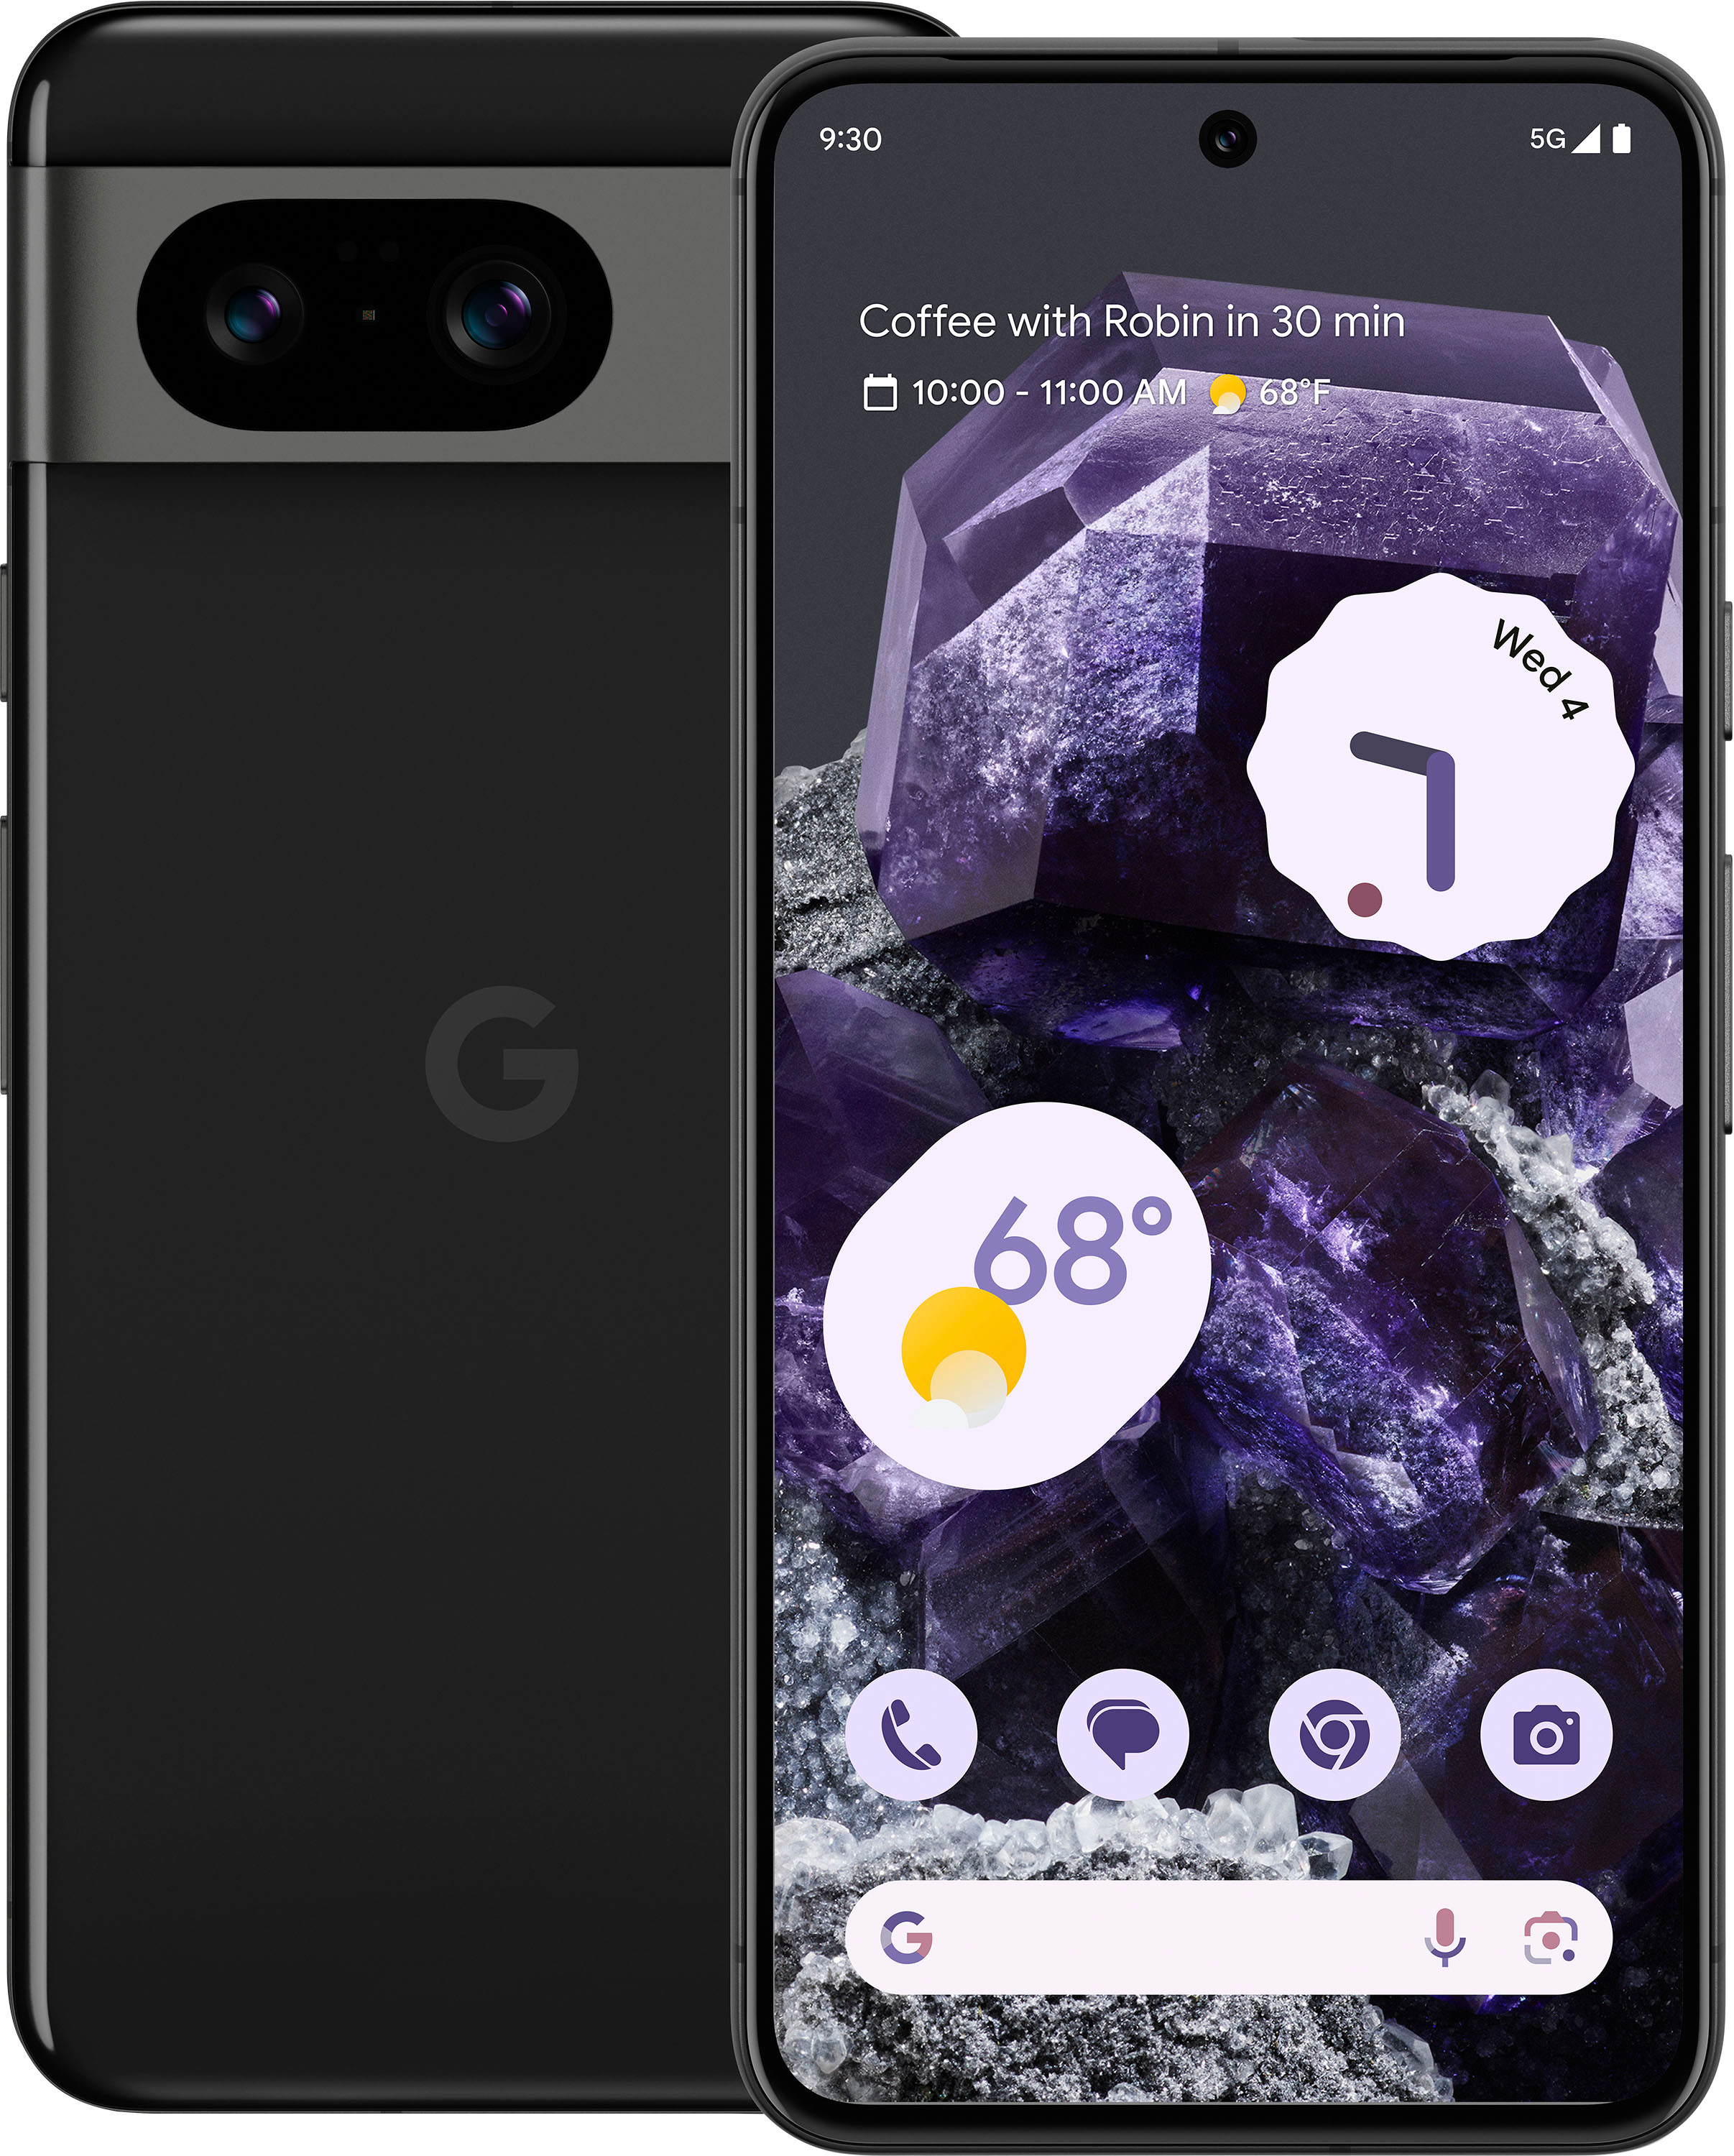 8 GA04851-US Best Google Buy Pixel - (Unlocked) 256GB Obsidian